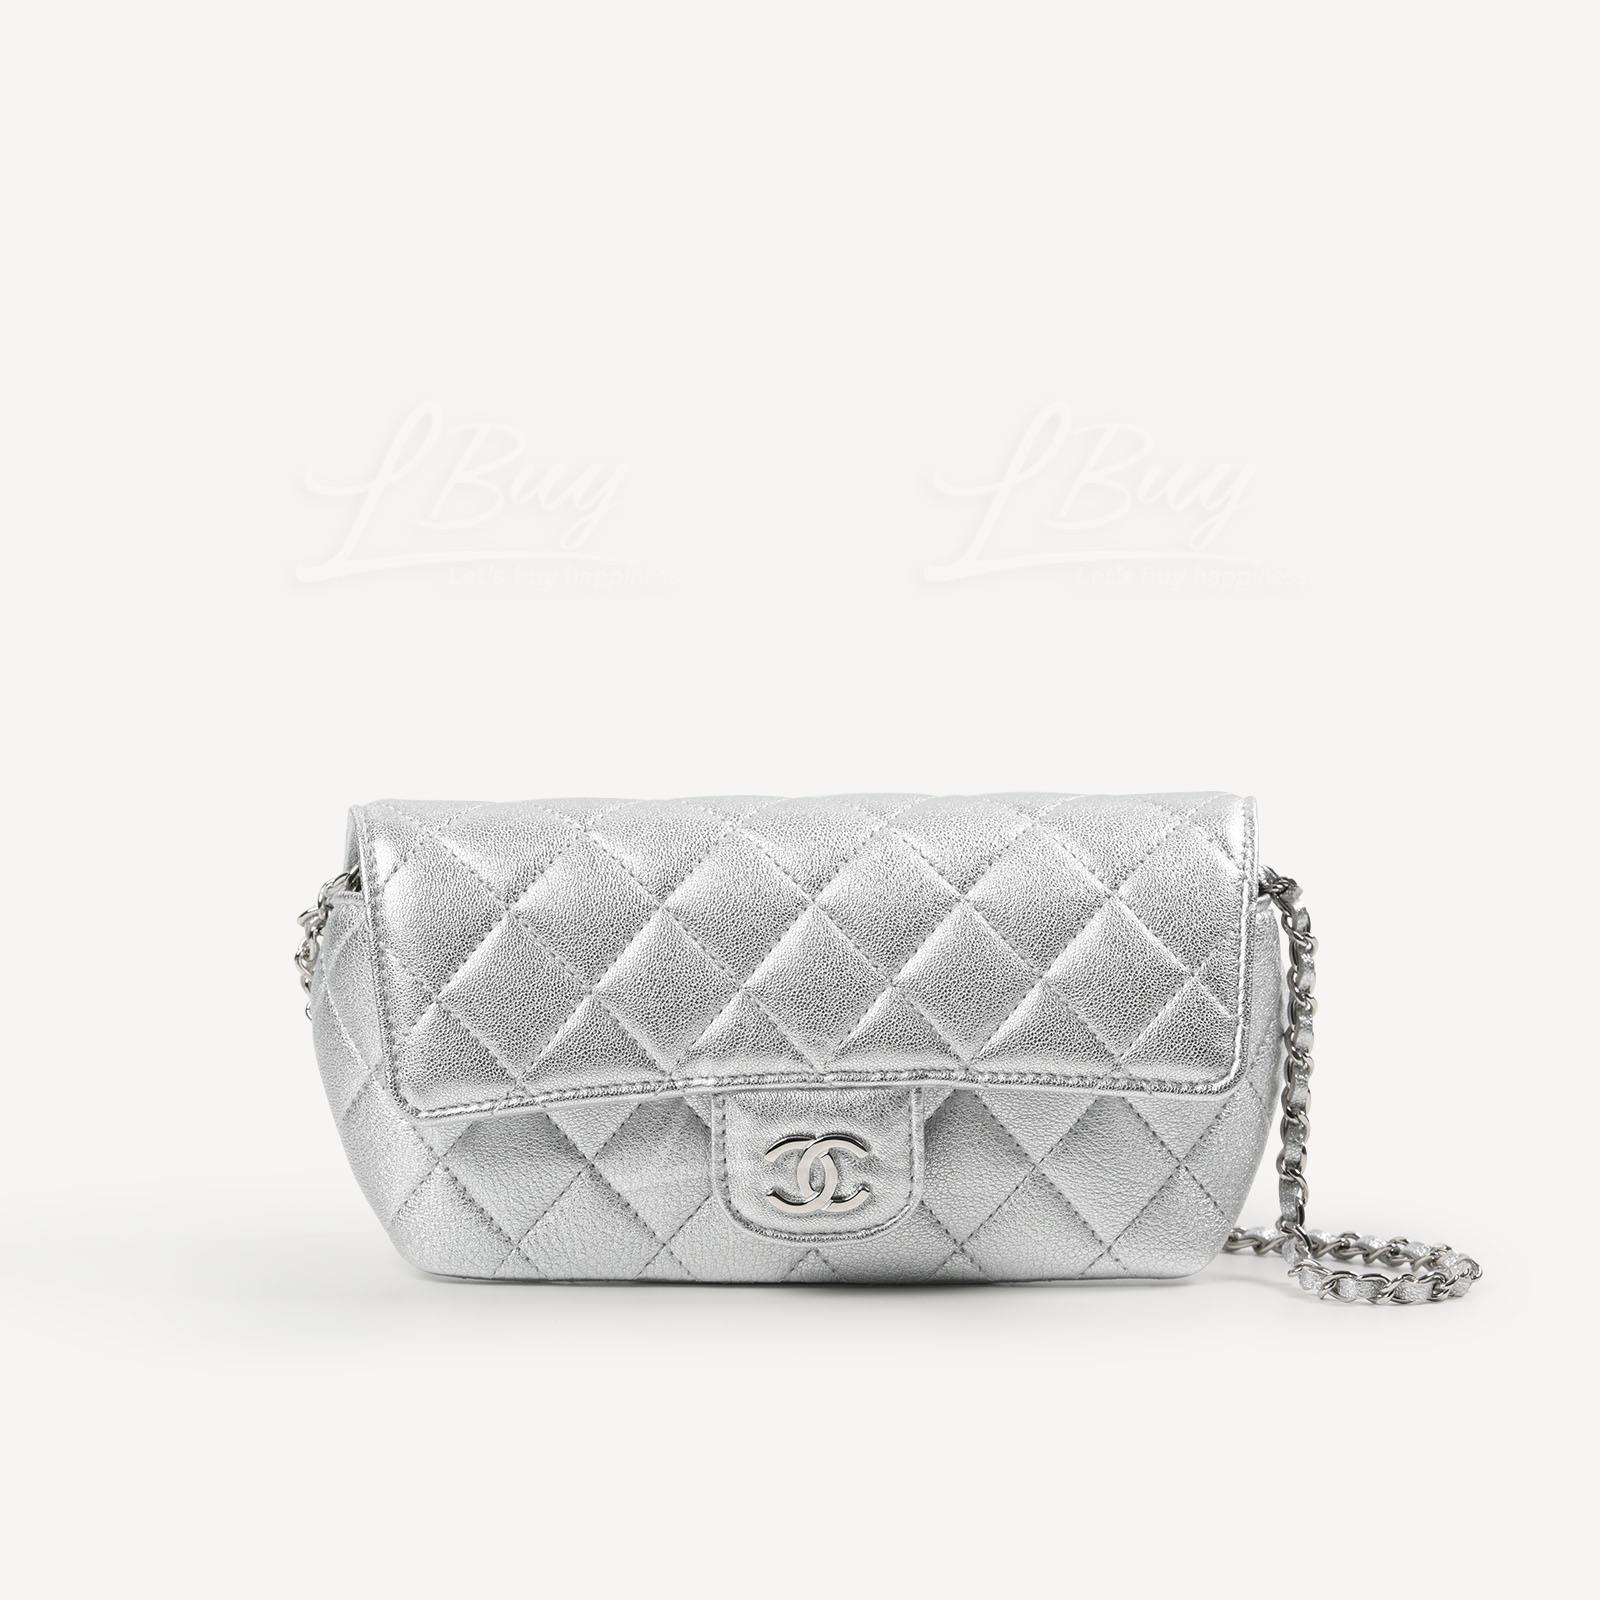 Chanel 经典款链条眼镜盒 (璀璨银) AP2044